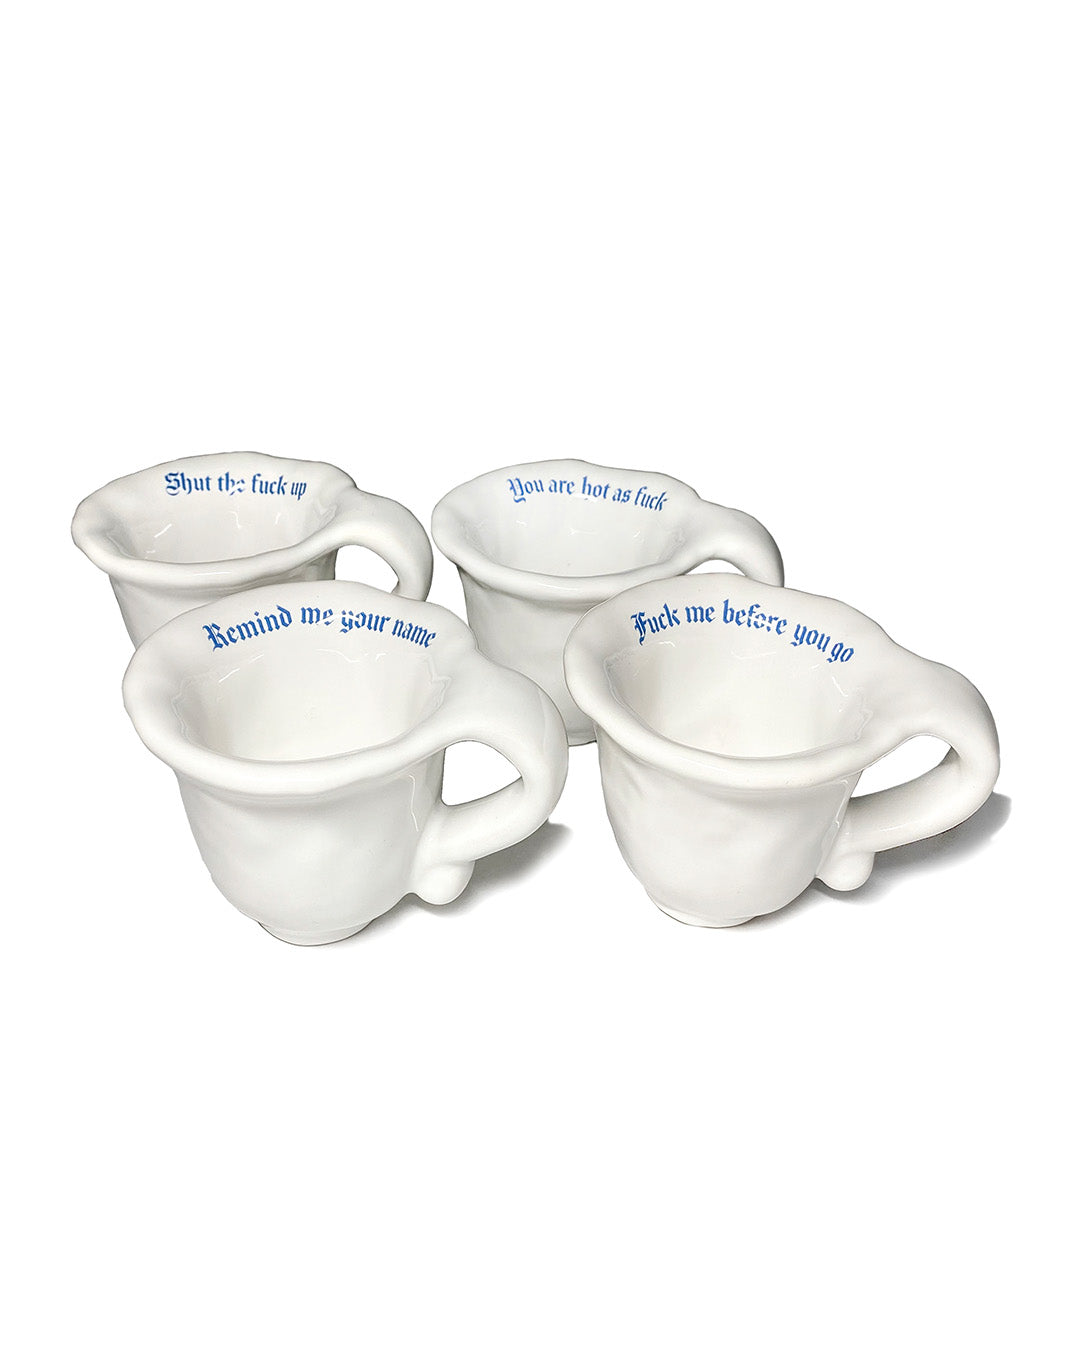 Set of 4 Unique Espresso Cups